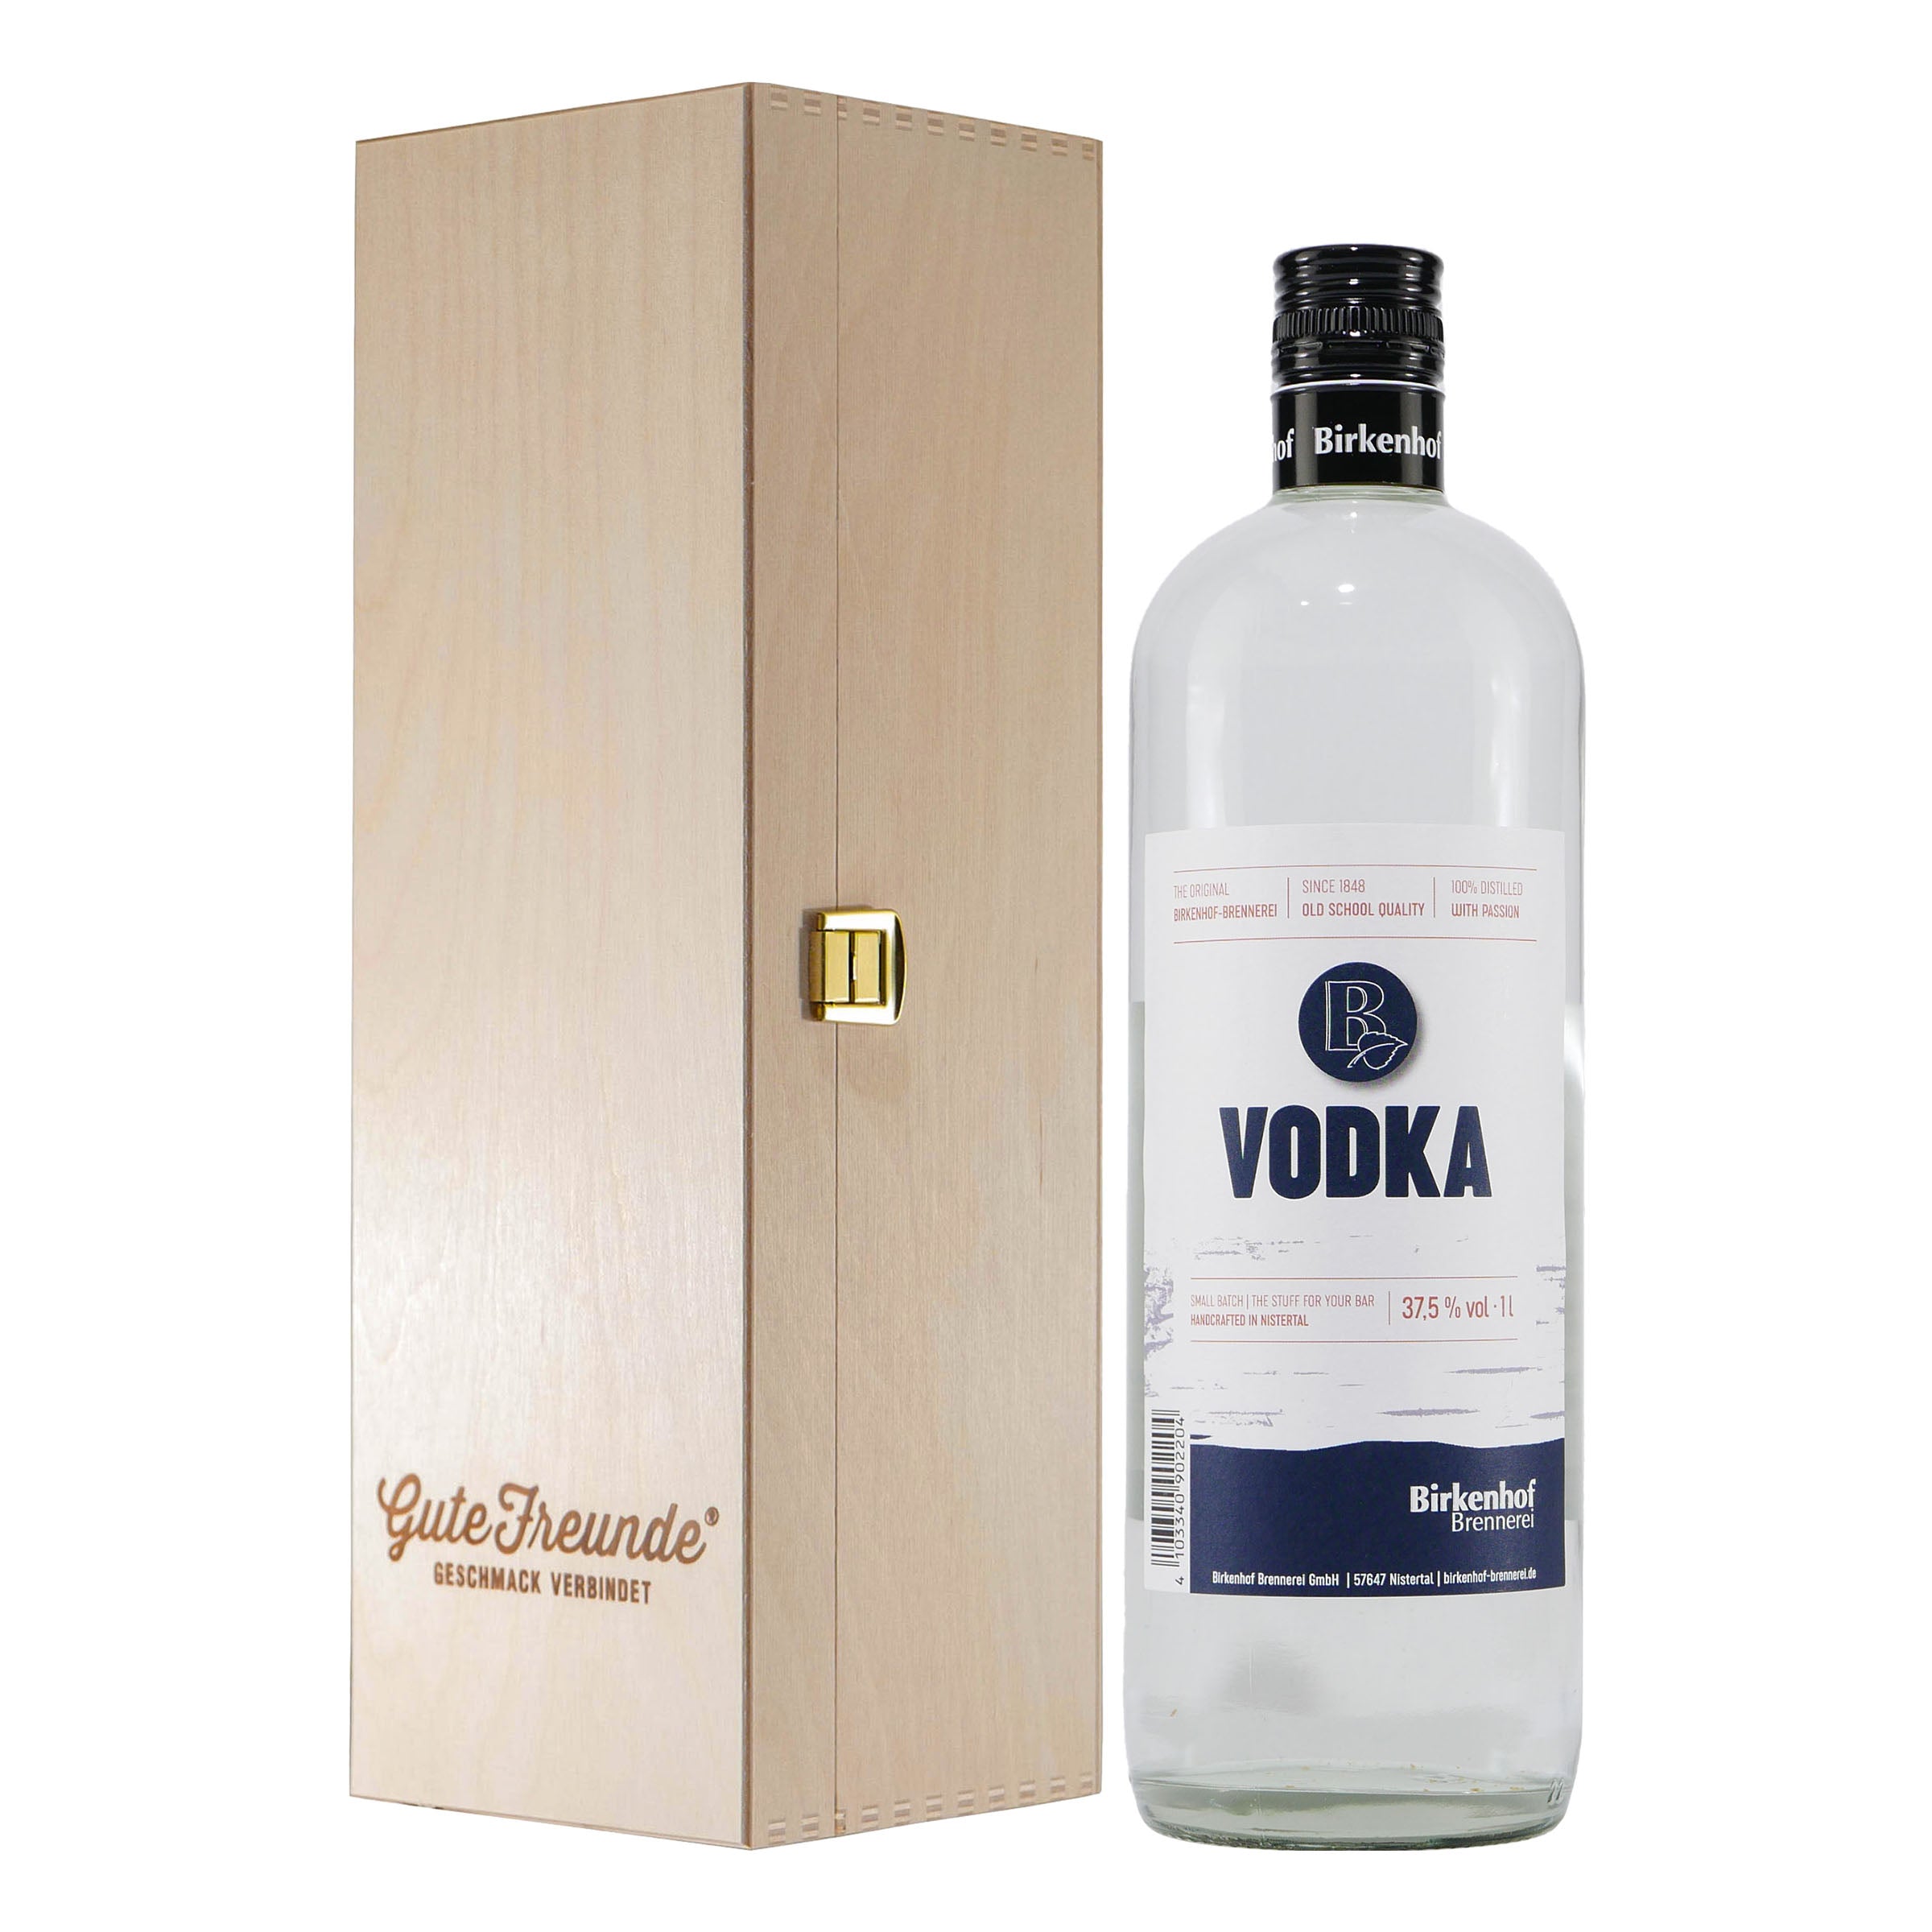 Vodka Präsente kaufen bei Gute-Freunde - Originelle Ideen für Genießer